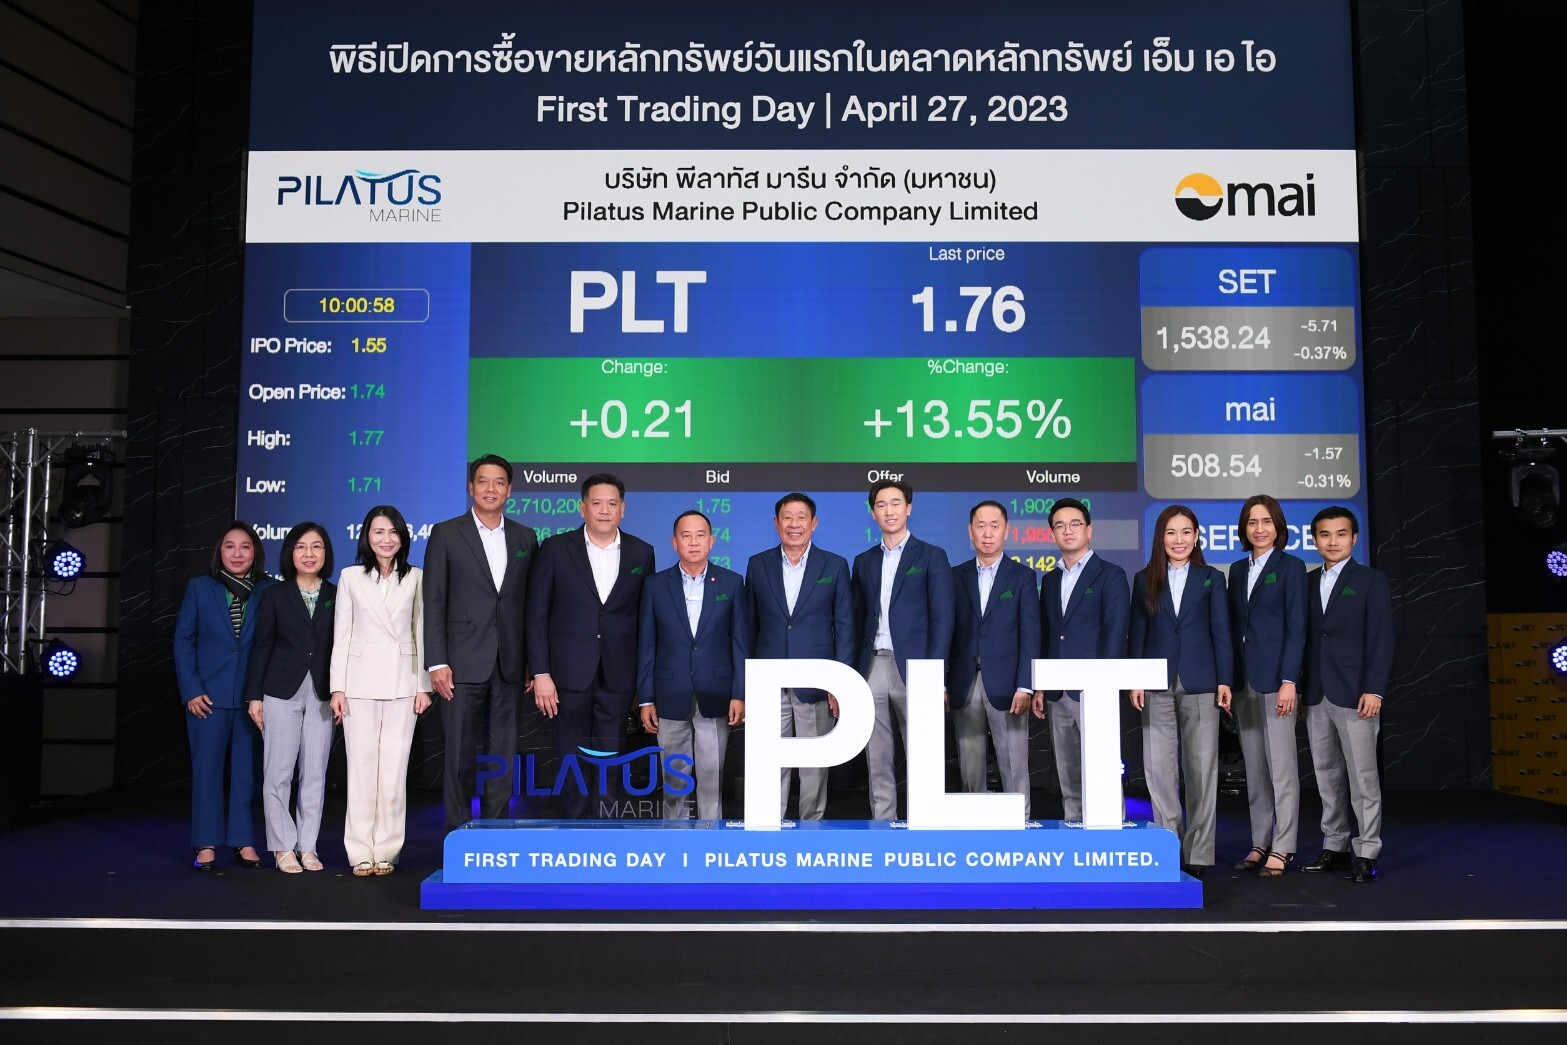 SET - mai ร่วมพิธีเปิดการซื้อขายหุ้น "PLT"